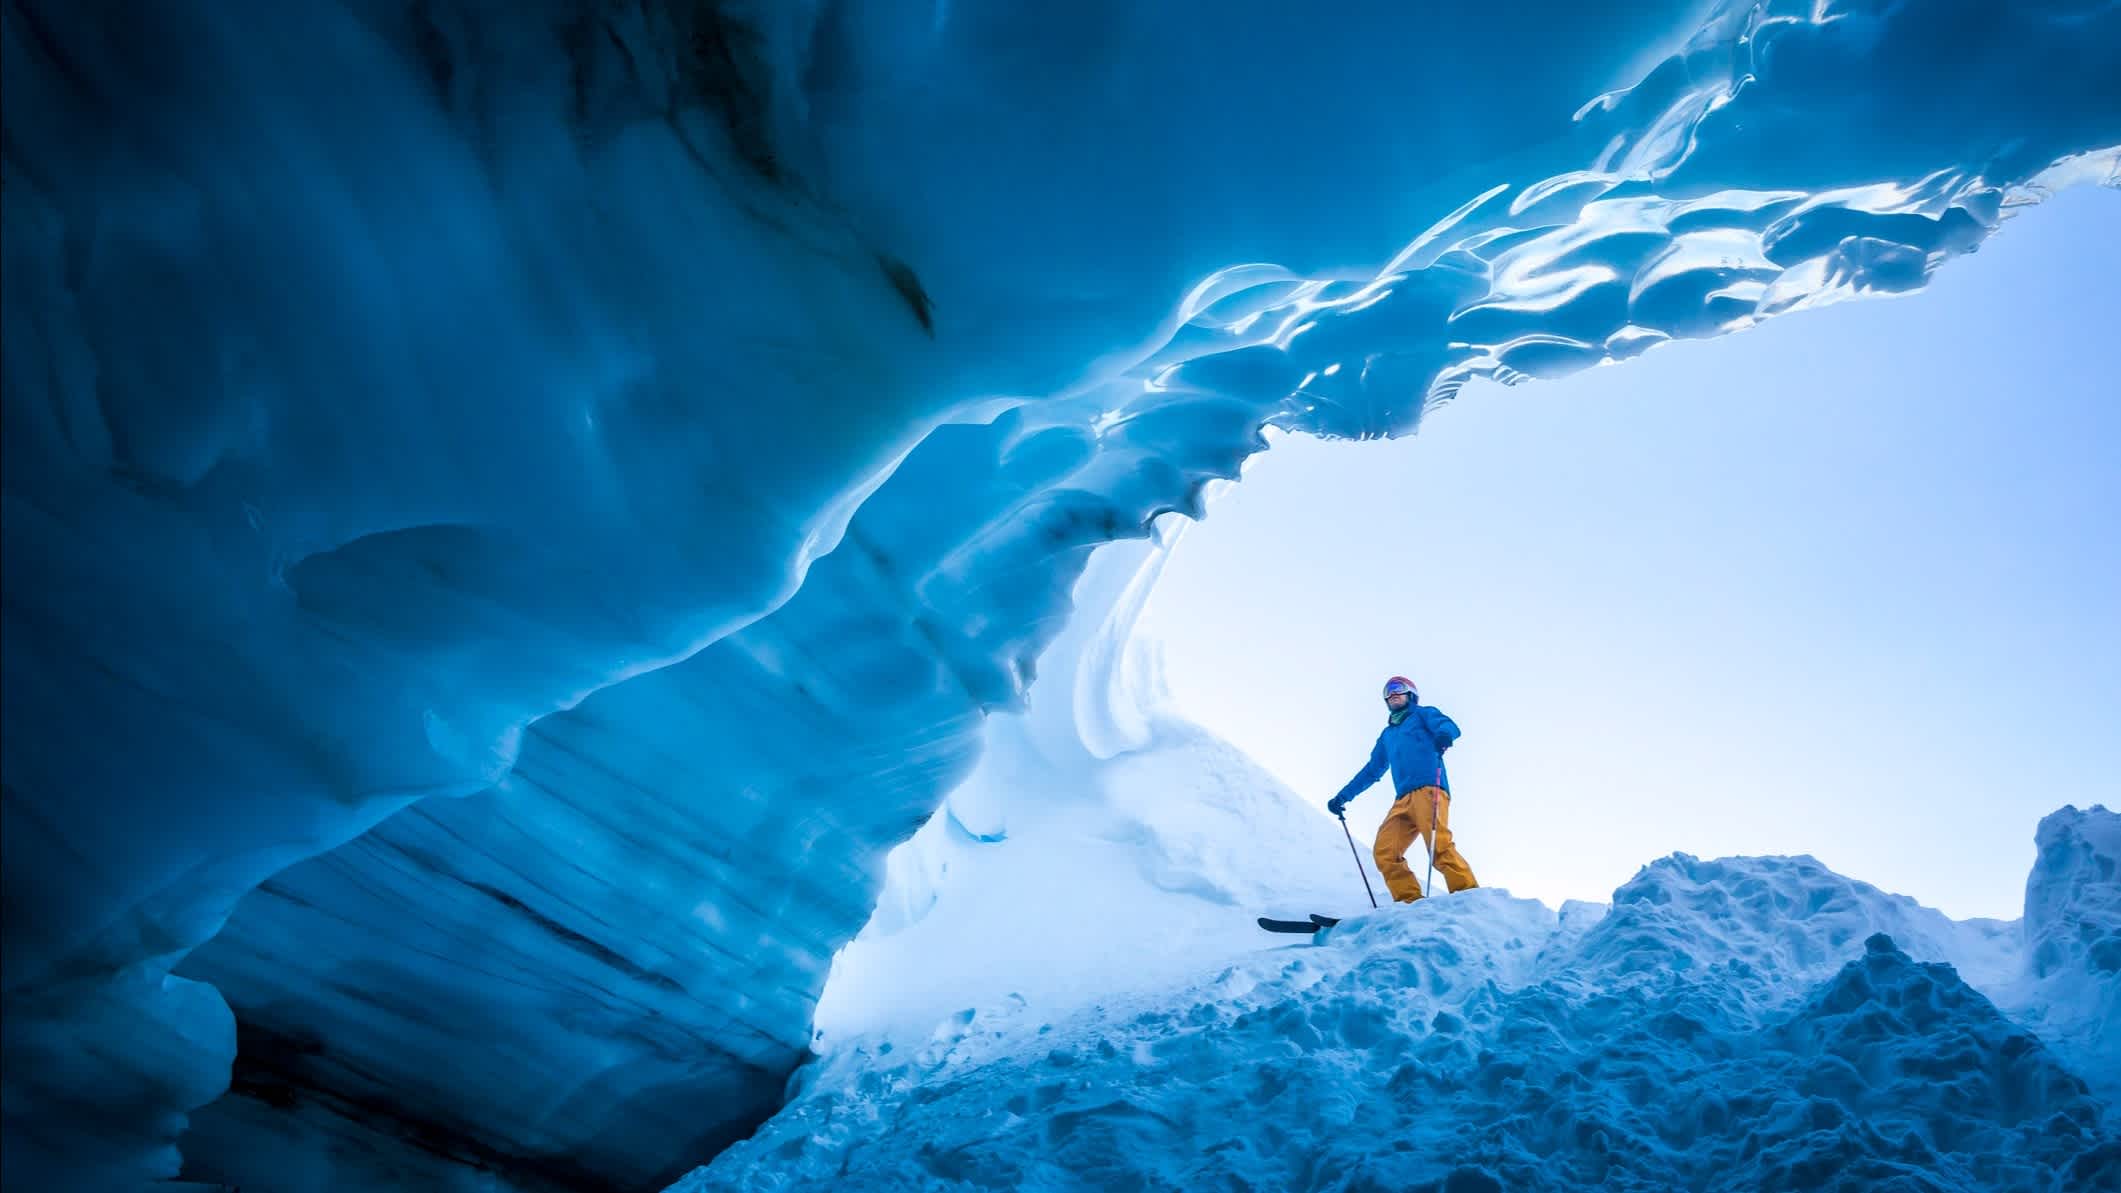 Skifahrer am Eingang zur Eishöhle in Whistler, BC, Kanada.

